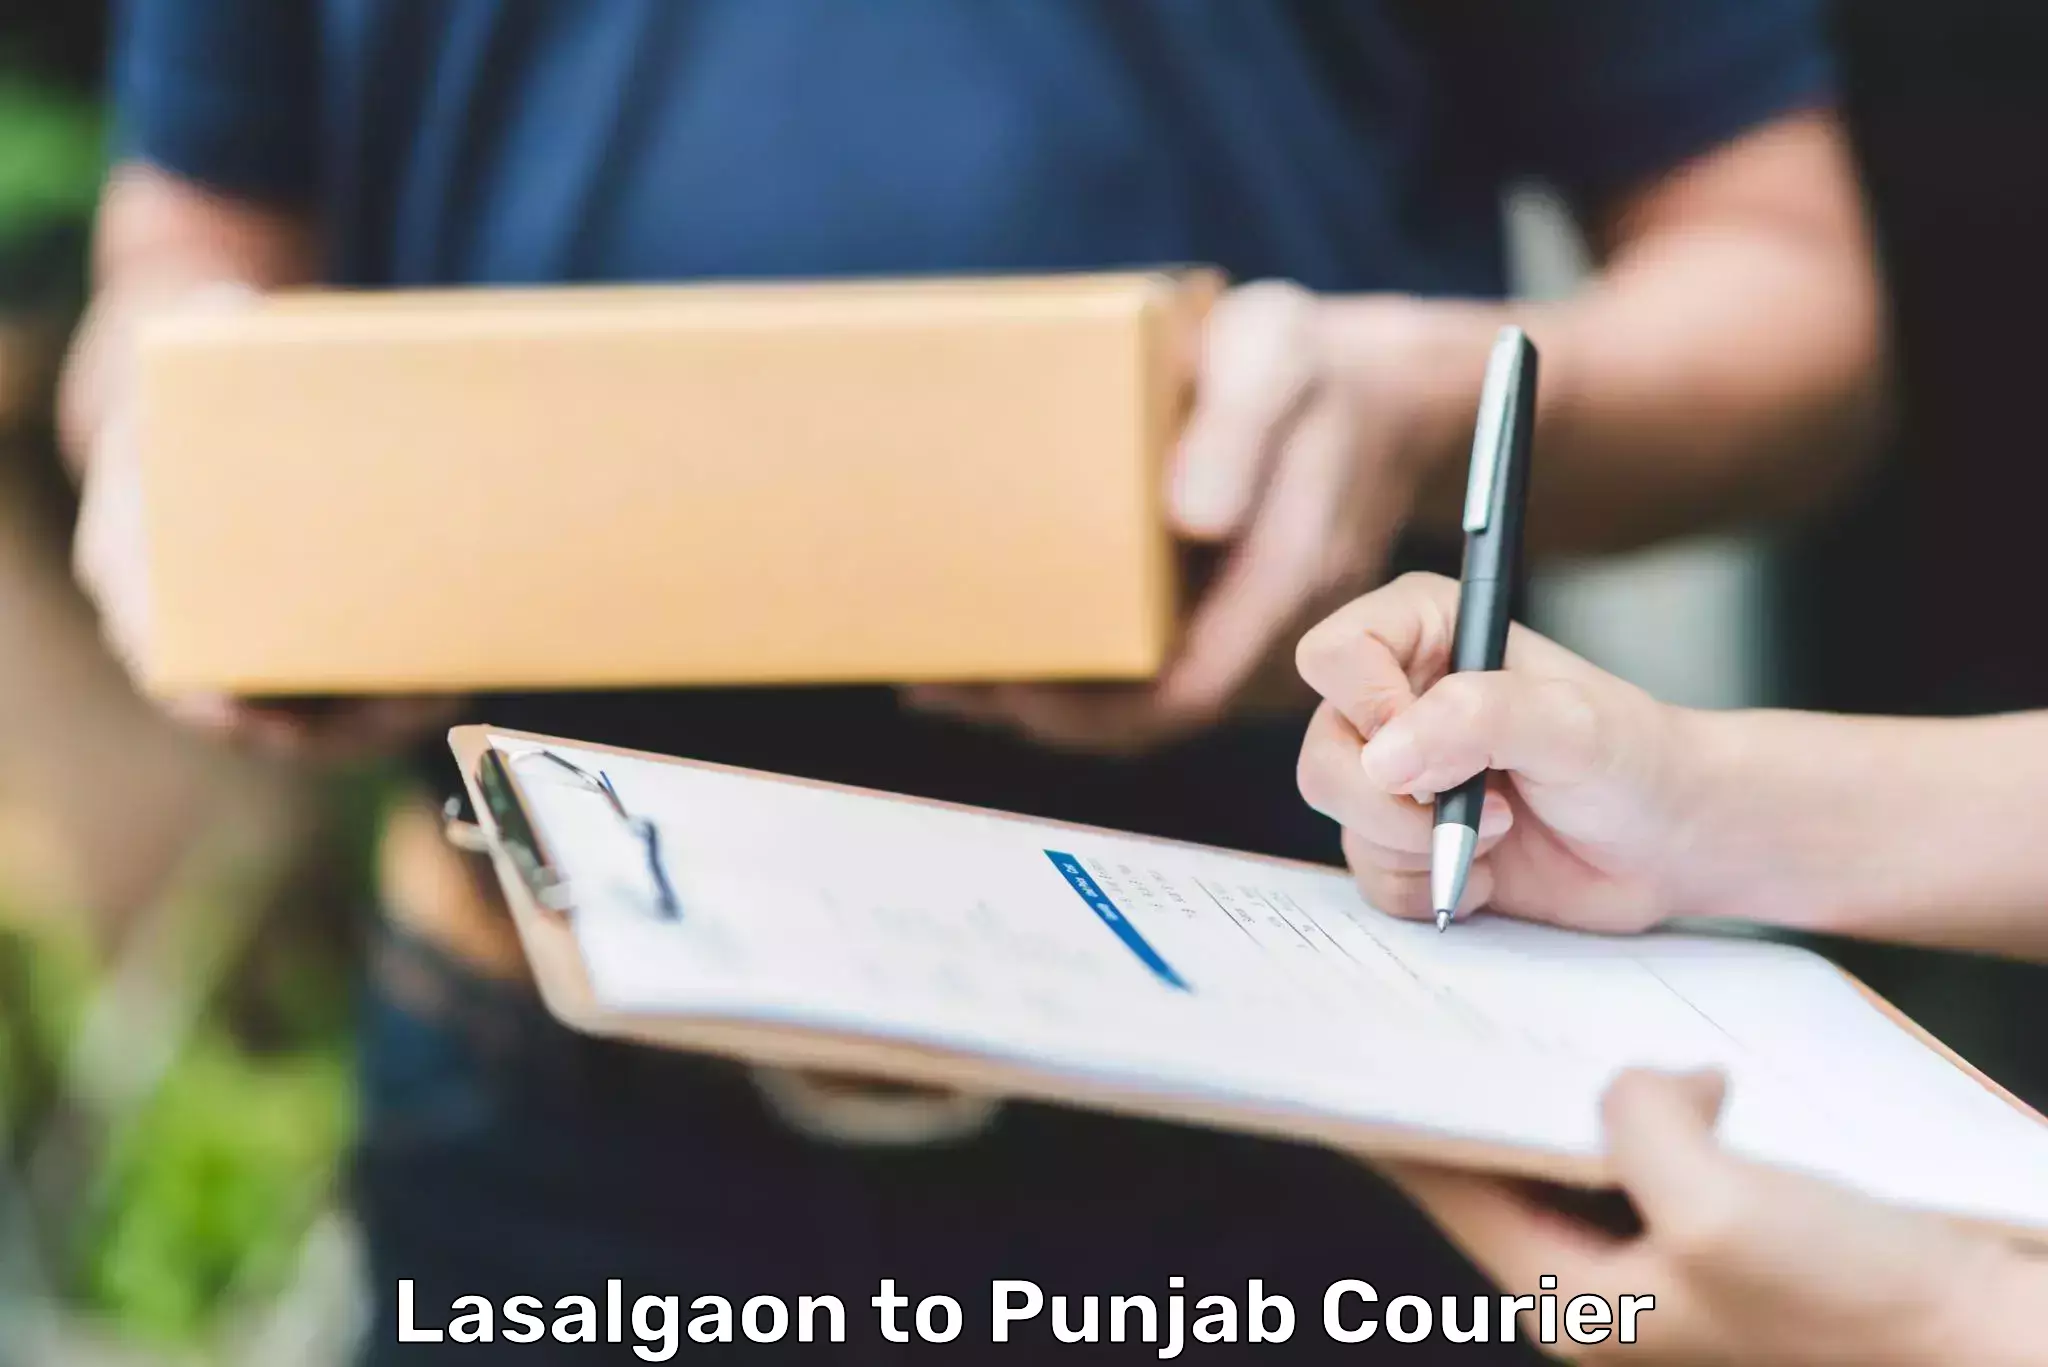 Professional courier handling Lasalgaon to Adampur Jalandhar